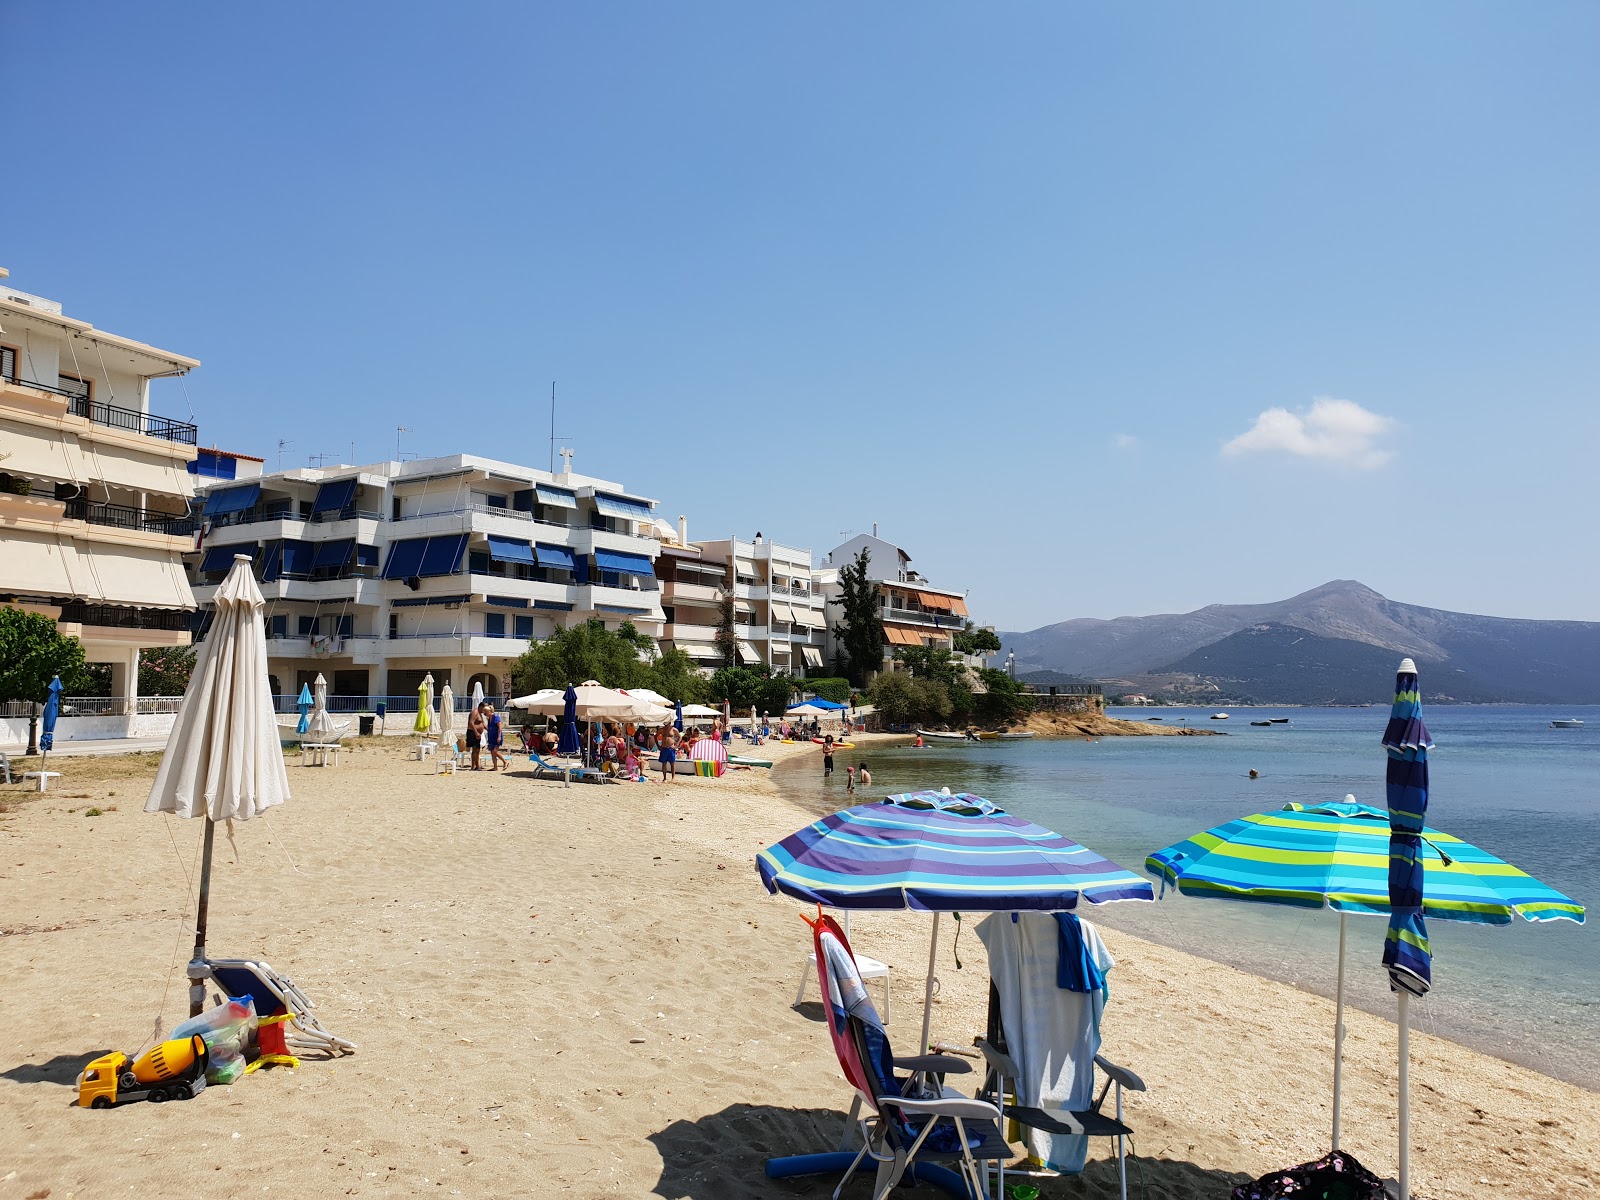 Fotografie cu Kefala beach - locul popular printre cunoscătorii de relaxare